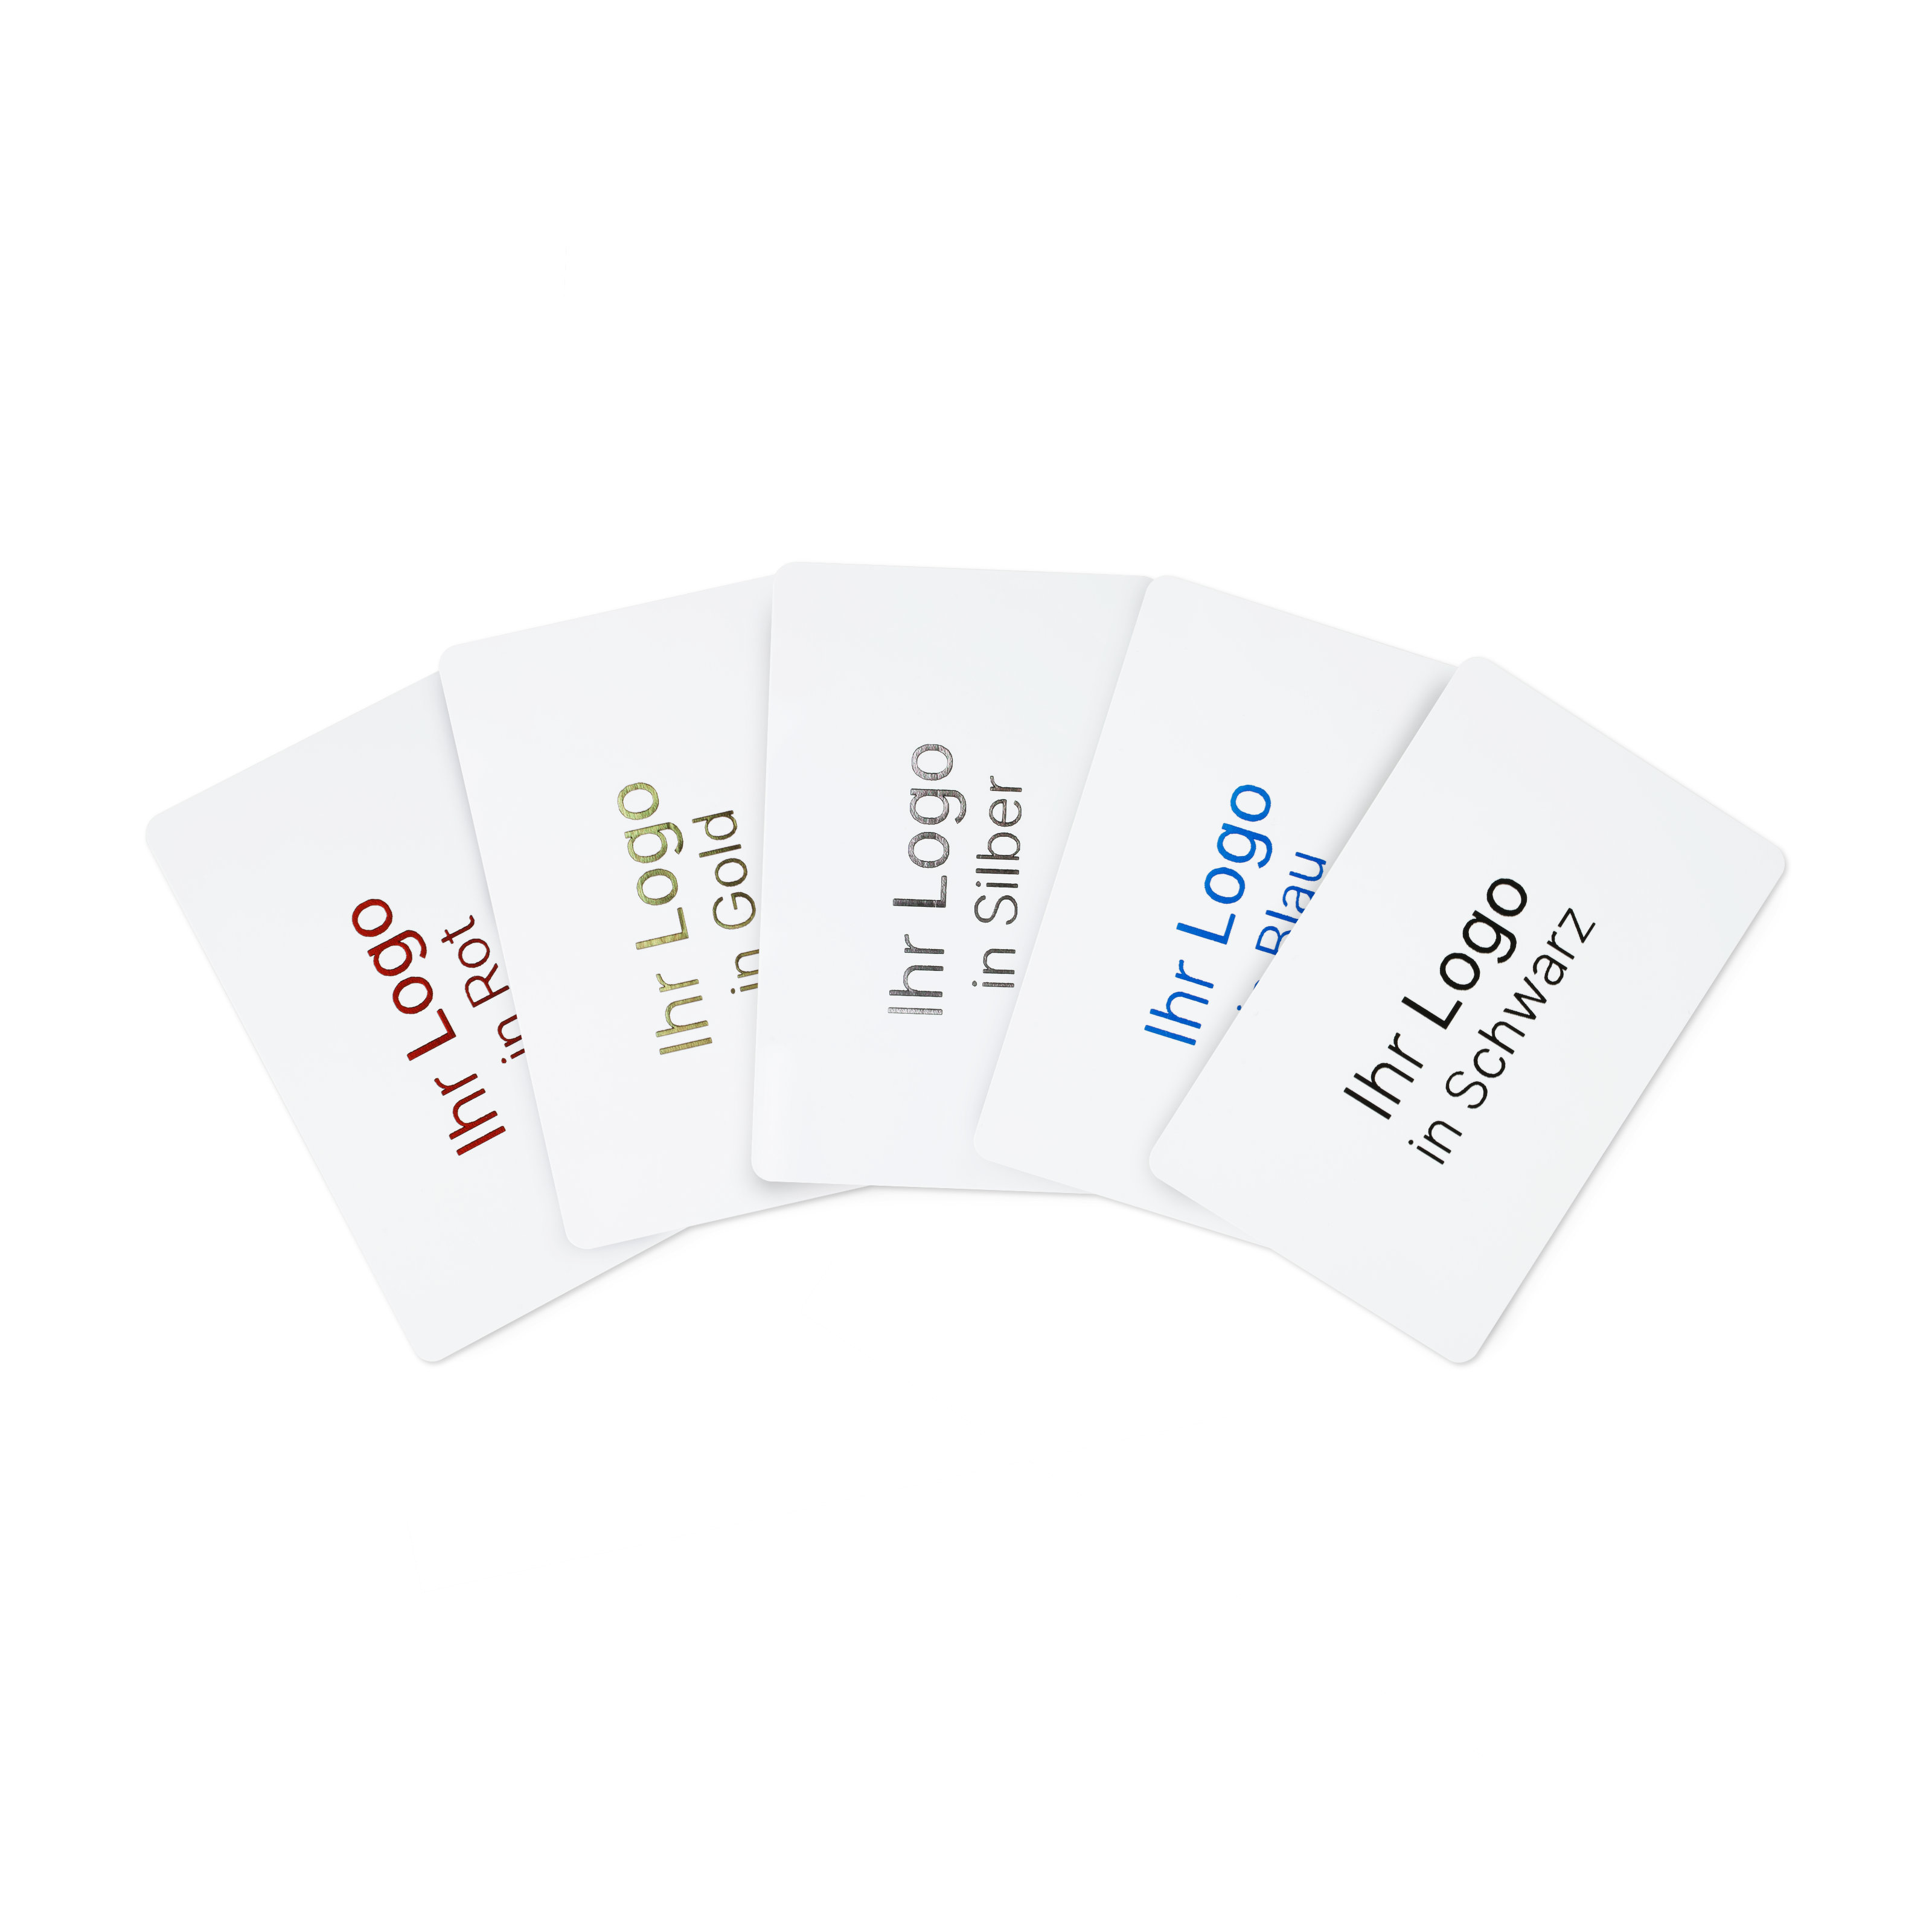 Gruppenbild von weißen NFC Karten mit den verschiedenen Druckfarben